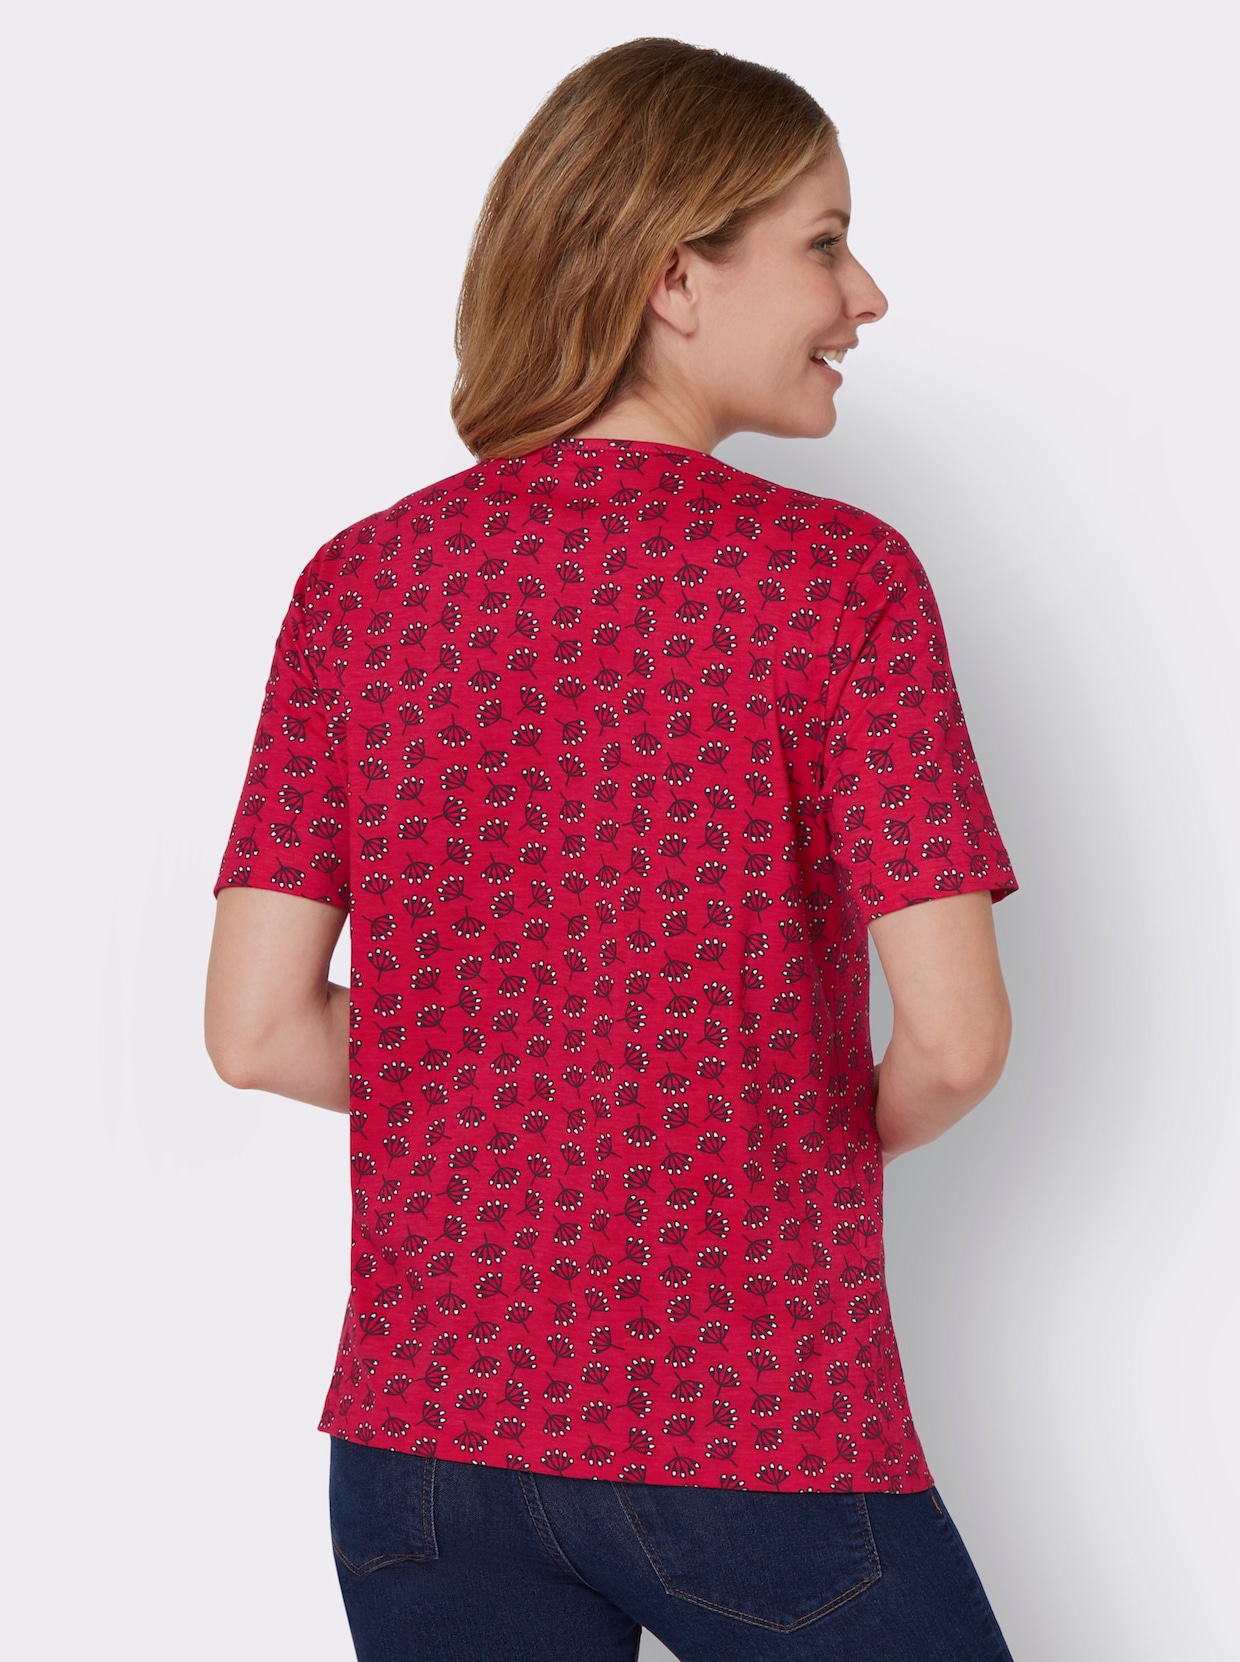 Druck-Shirt - erdbeere-ecru-bedruckt